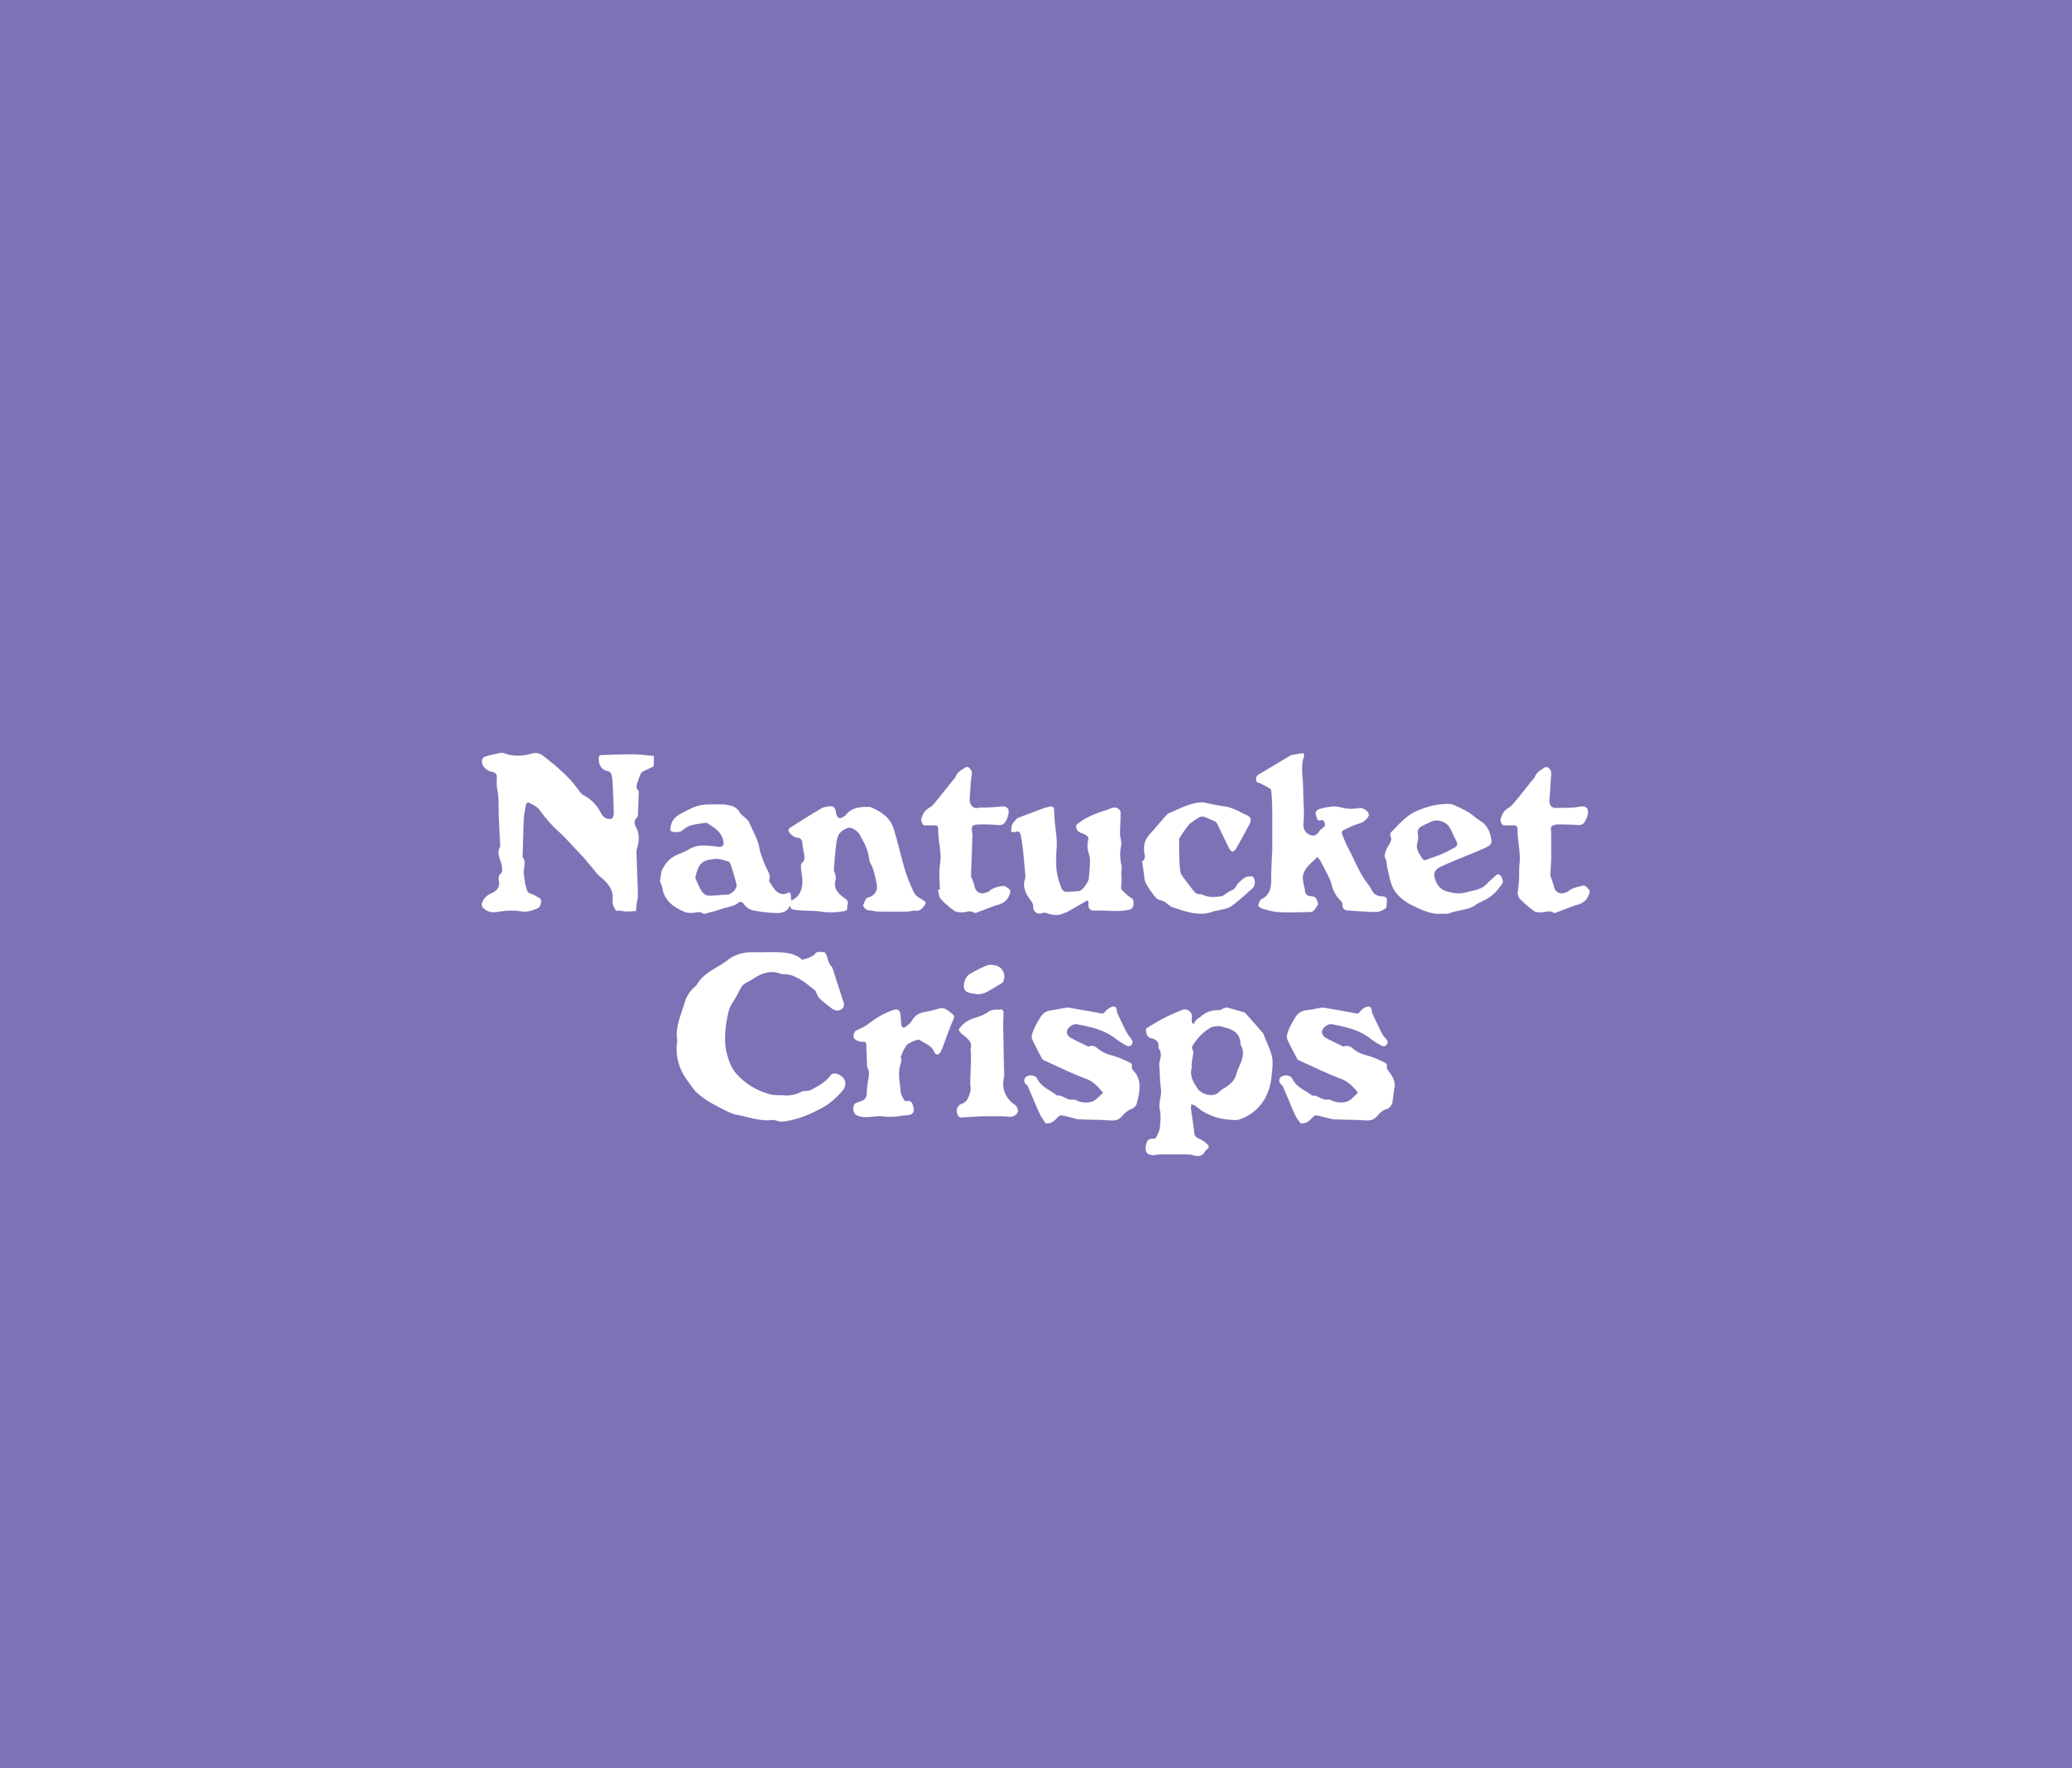 Nantucket Crisps logo